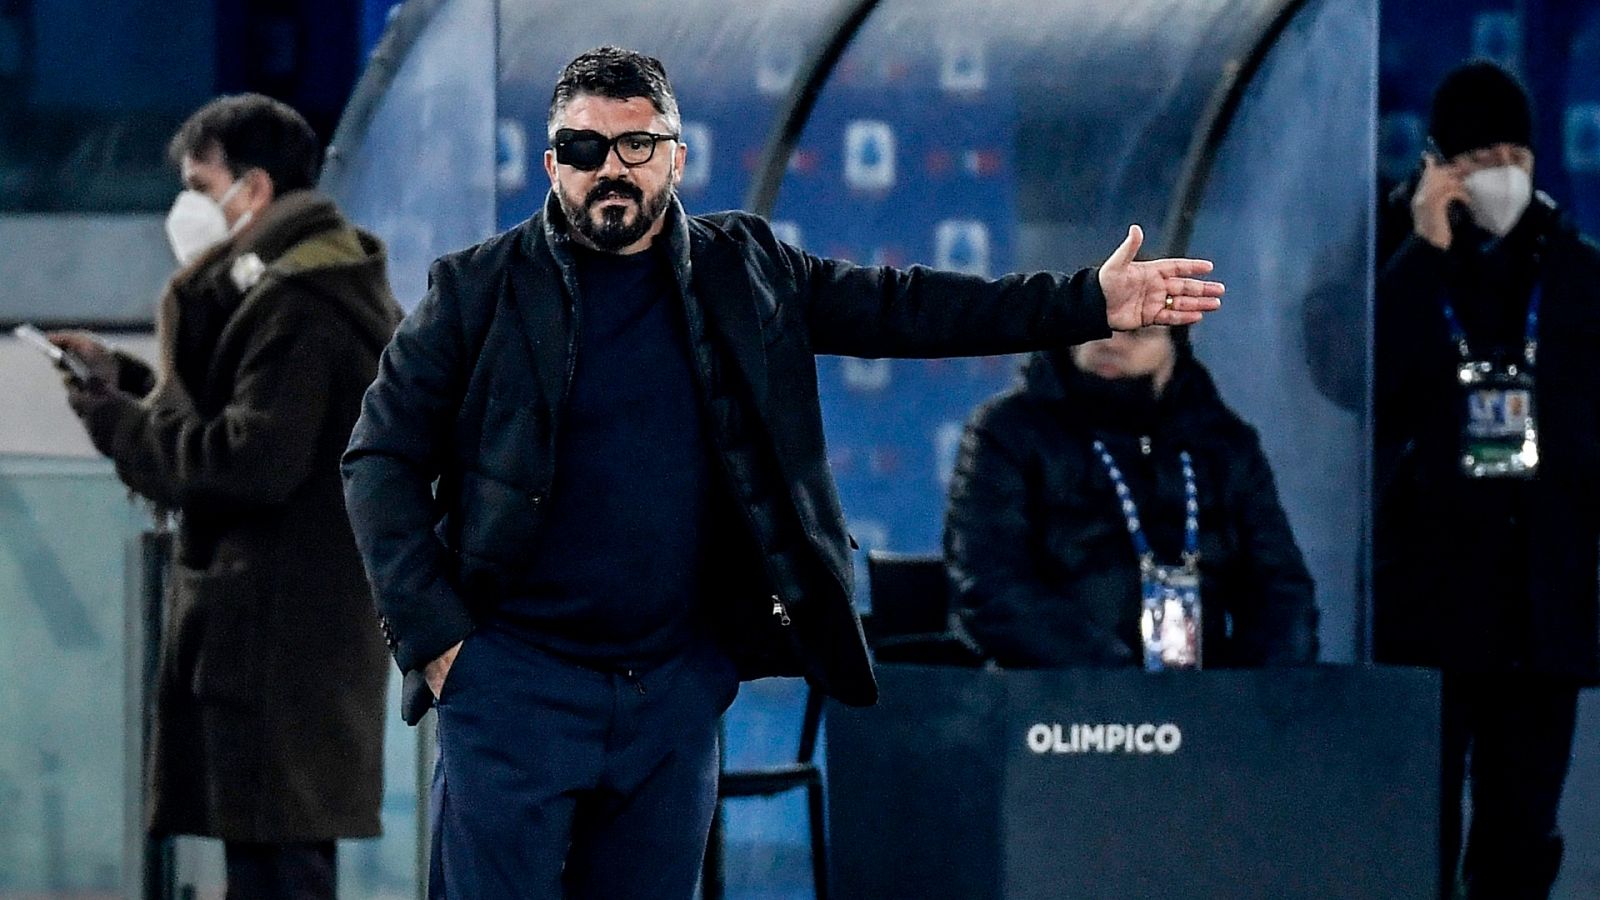 El técnico del Nápoles, Gennaro Gattuso, con un parche en el ojo durante el encuentro ante el Torino de este miércoles